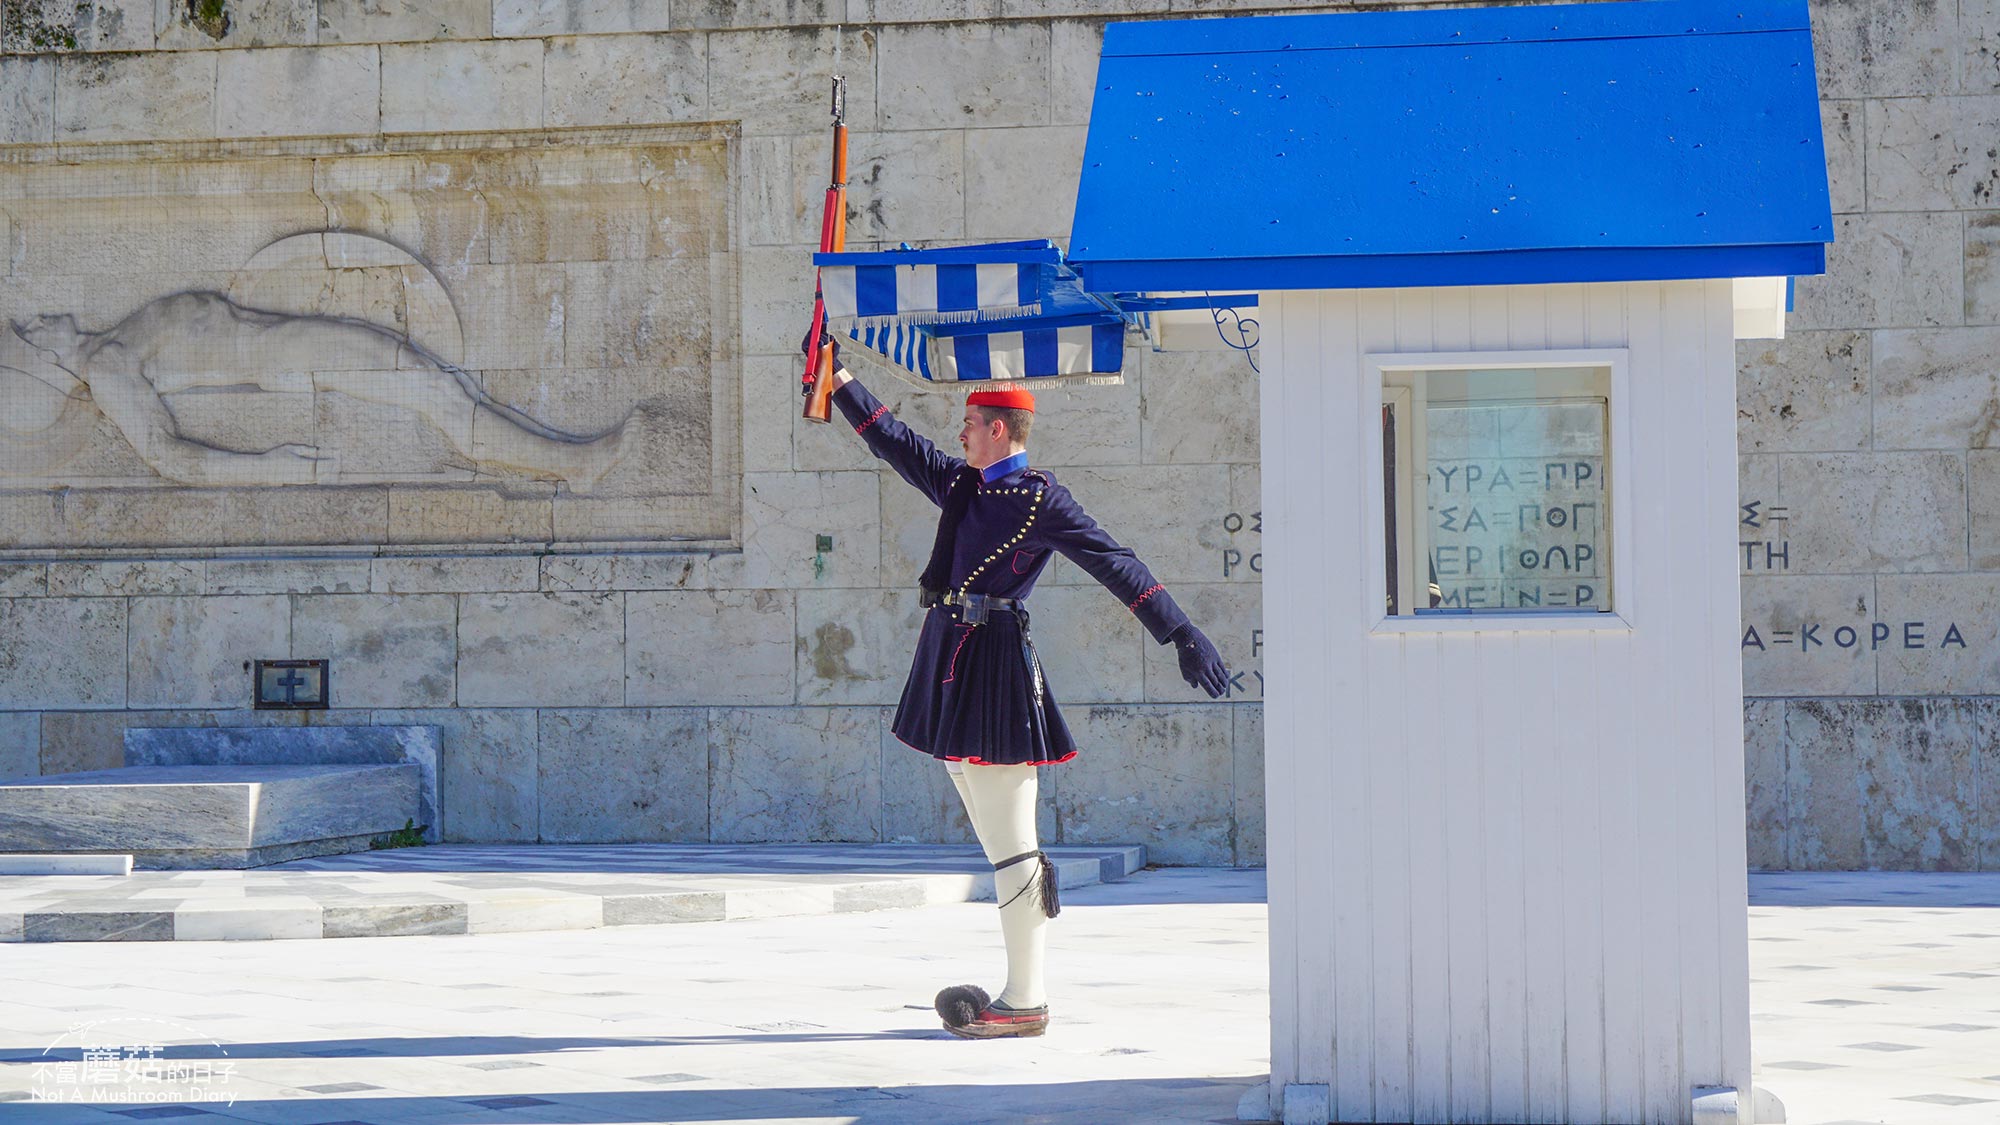 雅典 希臘 憲法廣場 國會大廈 衛兵交接